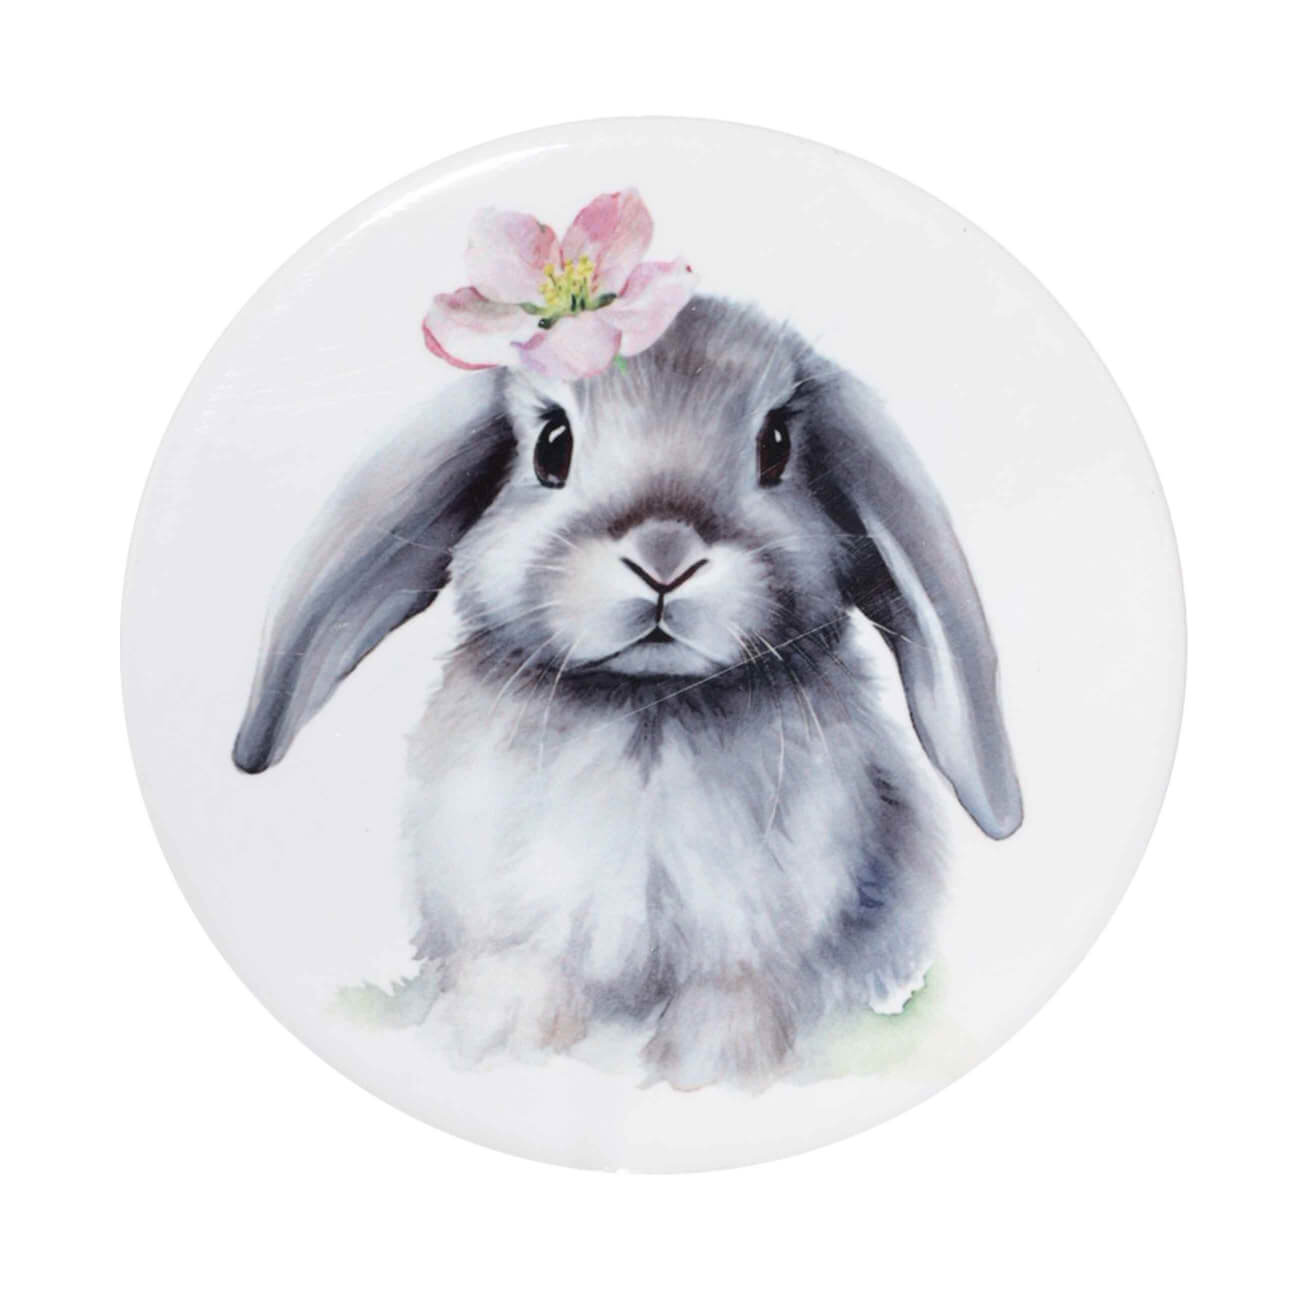 Подставка под кружку, 11 см, керамика/пробка, круглая, белая, Кролик с цветком, Pure Easter изображение № 1